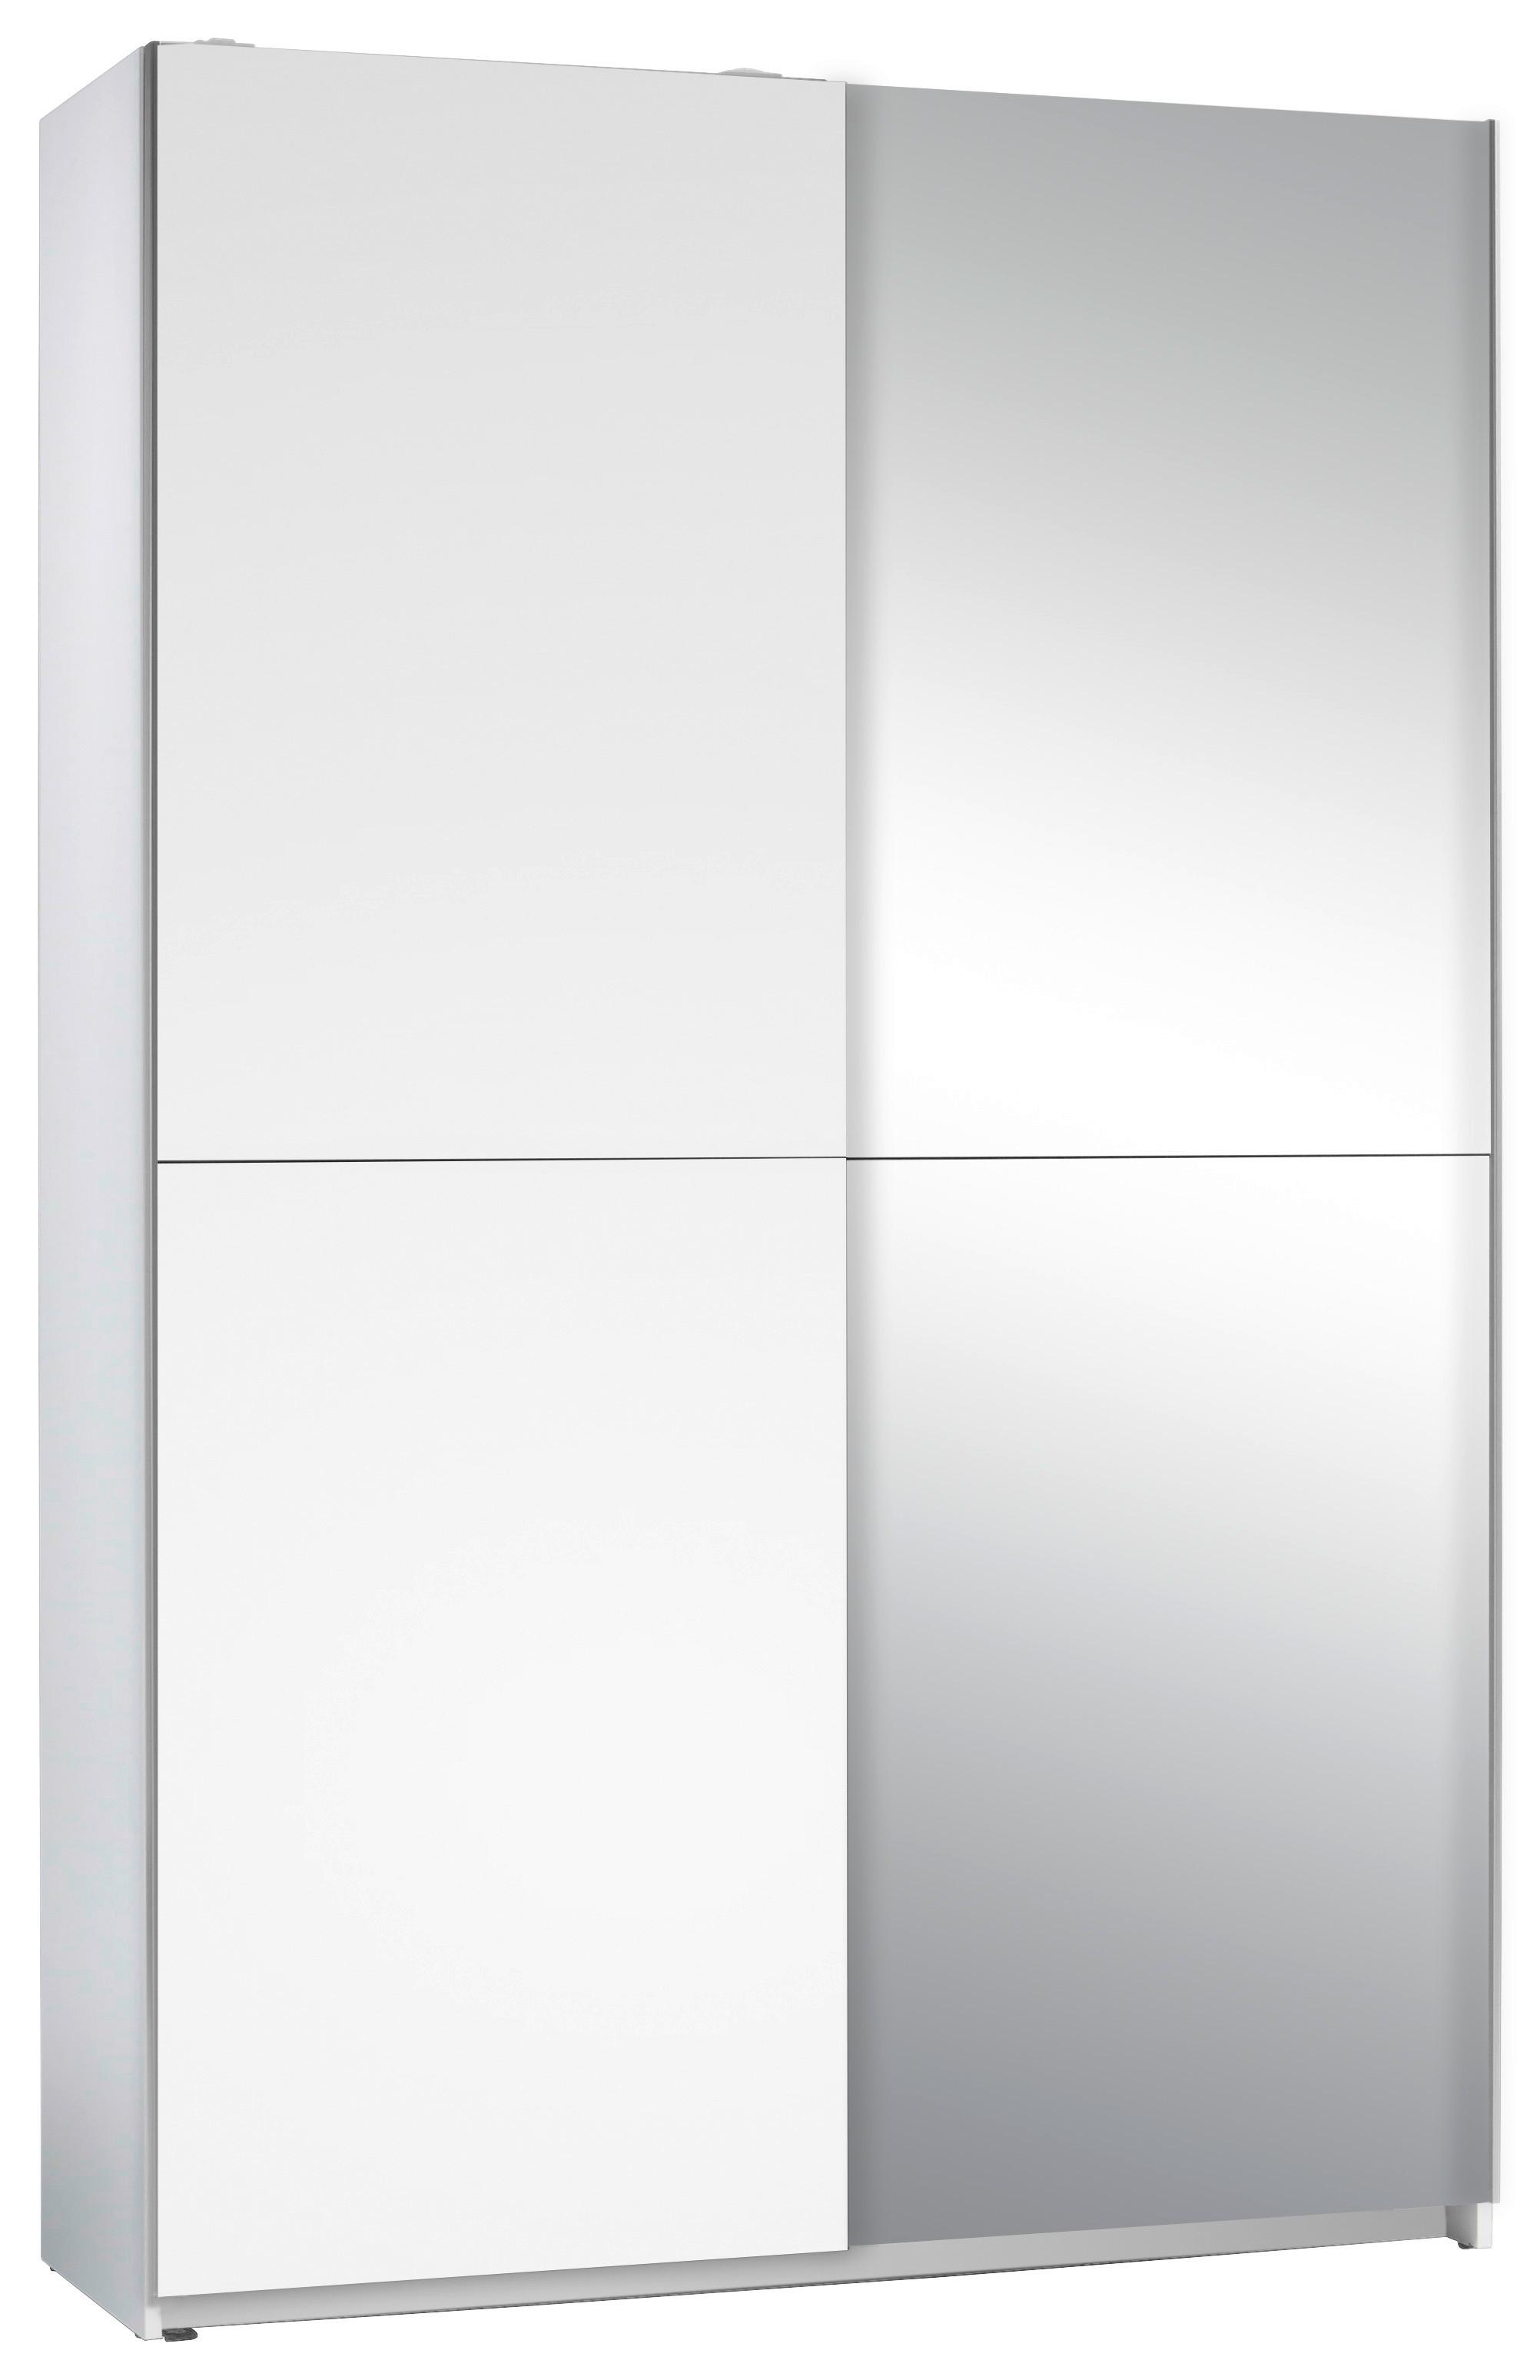 Skriňa S Posuvnými Dverami Slim 125 Cm Biela - biela/strieborná, Basics, sklo (125/195,5/38cm) - P & B